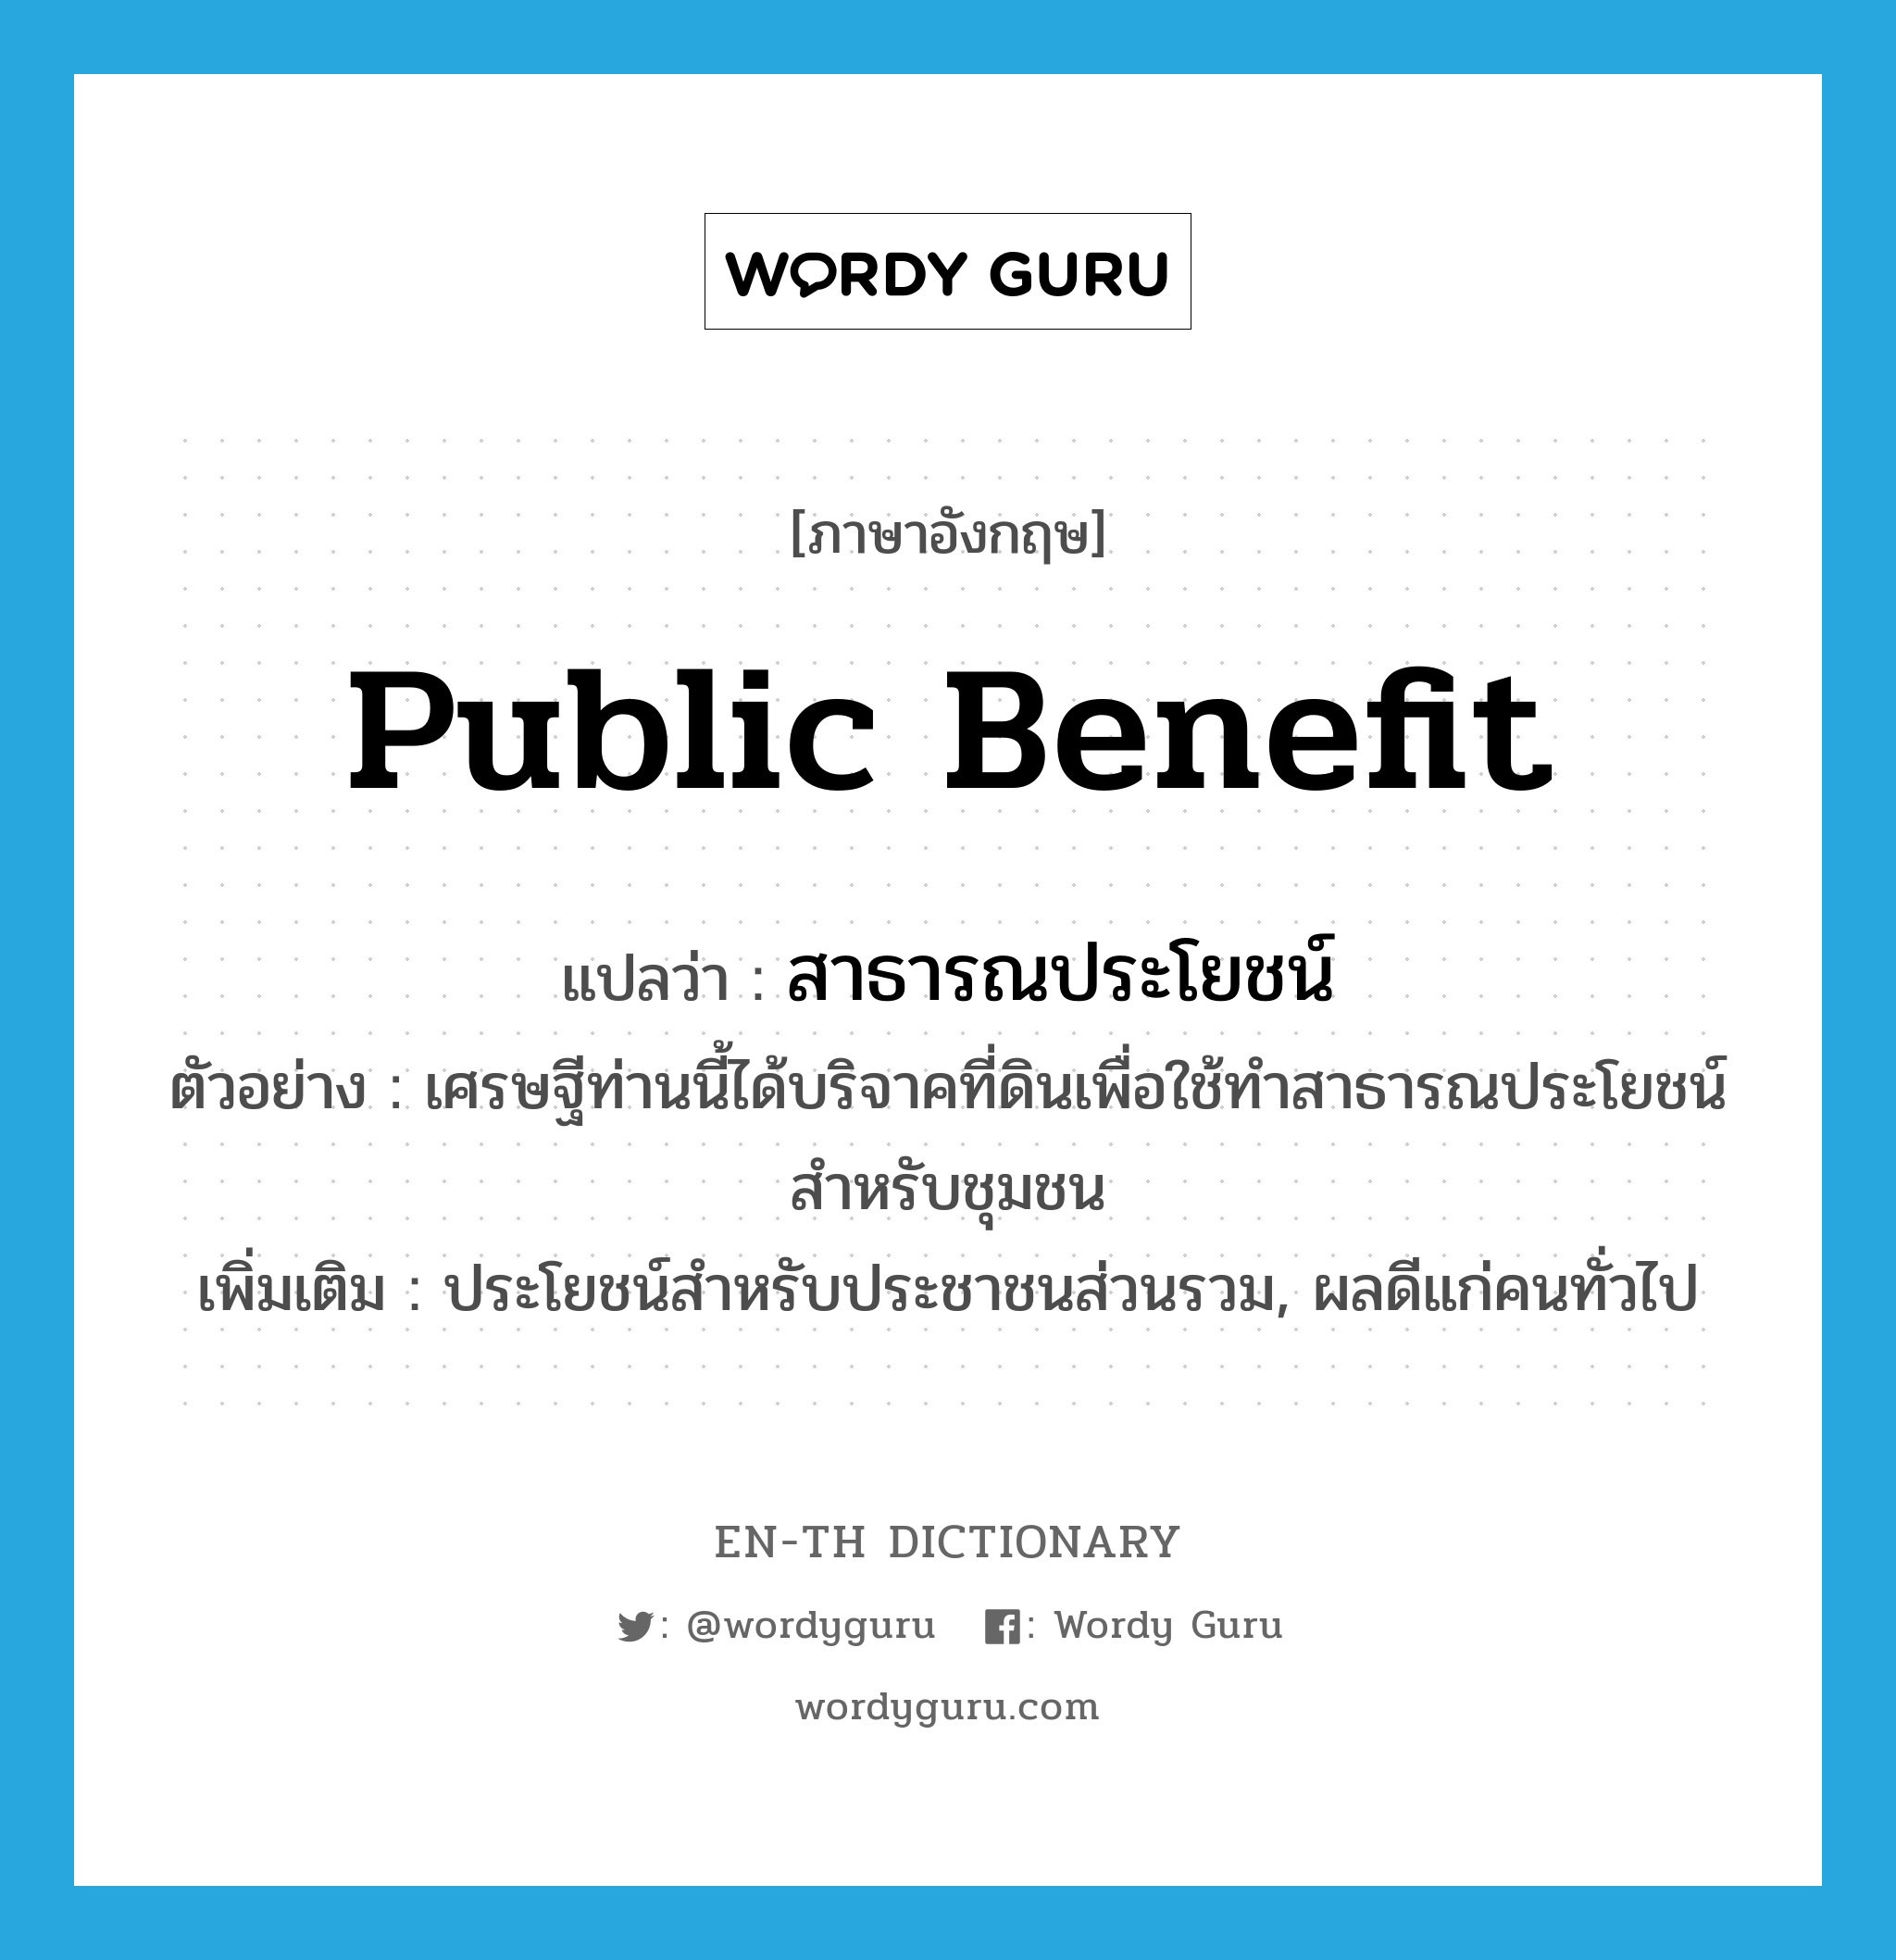 public benefit แปลว่า?, คำศัพท์ภาษาอังกฤษ public benefit แปลว่า สาธารณประโยชน์ ประเภท N ตัวอย่าง เศรษฐีท่านนี้ได้บริจาคที่ดินเพื่อใช้ทำสาธารณประโยชน์สำหรับชุมชน เพิ่มเติม ประโยชน์สำหรับประชาชนส่วนรวม, ผลดีแก่คนทั่วไป หมวด N